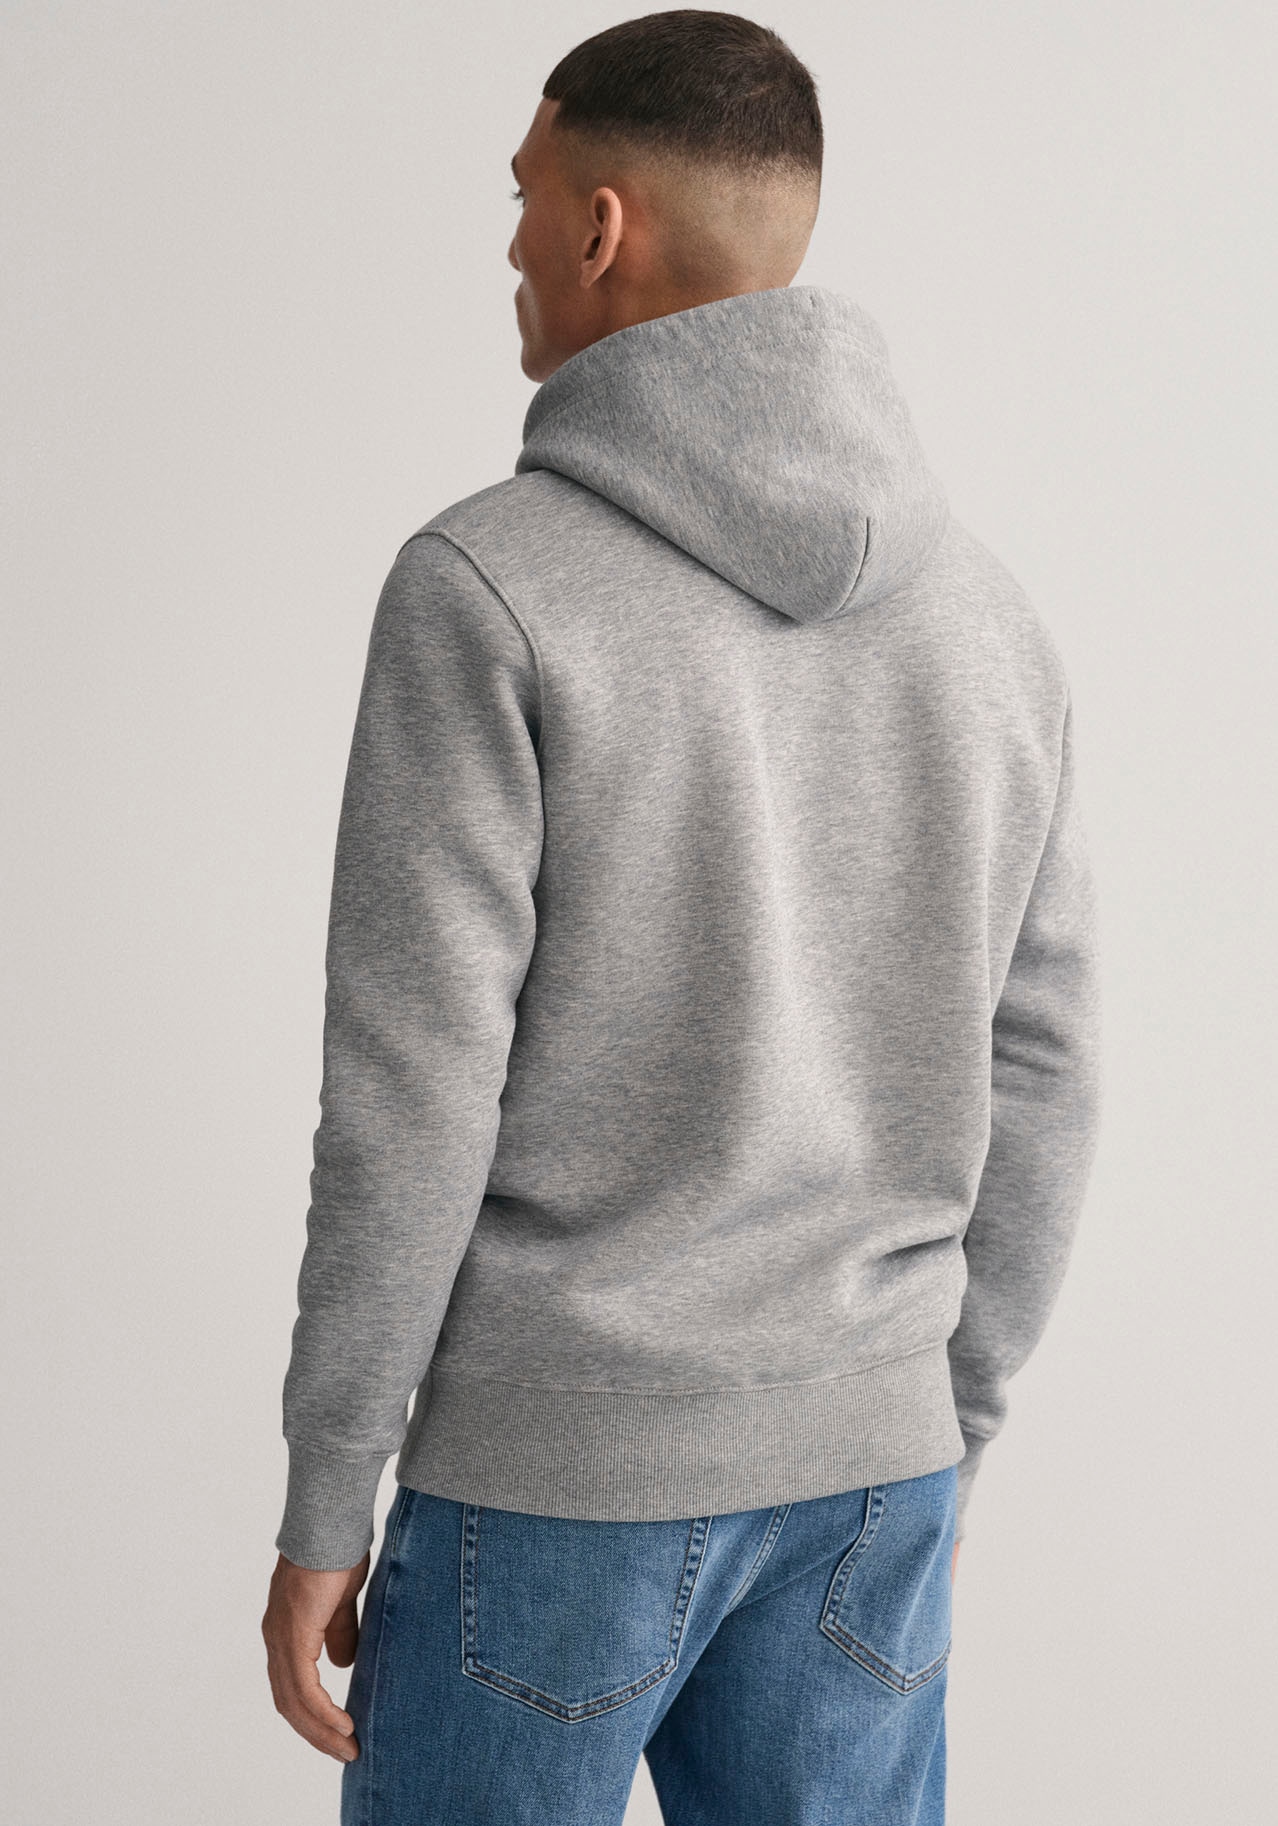 kaufen ohne ➤ versandkostenfrei Mindestbestellwert - Sweatshirts